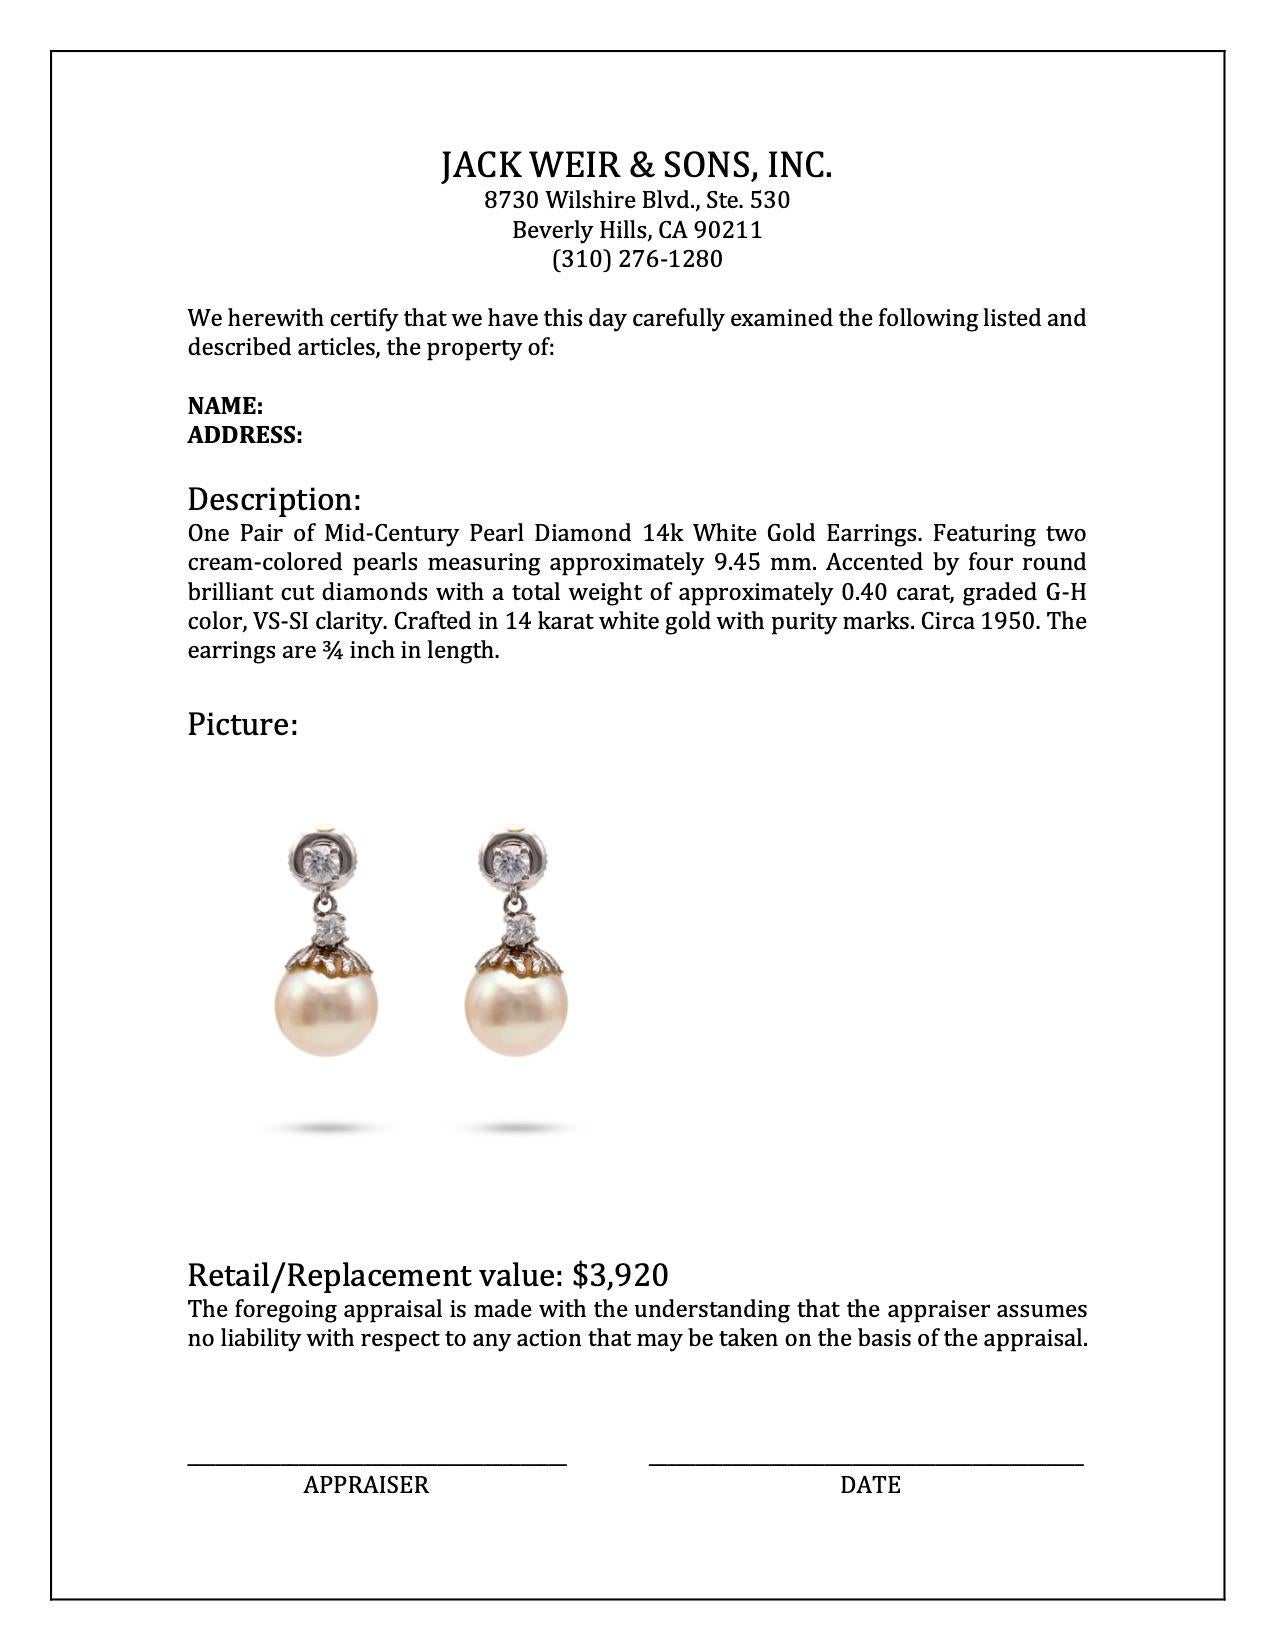 Women's or Men's Mid-Century Pearl Diamond 14k White Gold Earrings For Sale